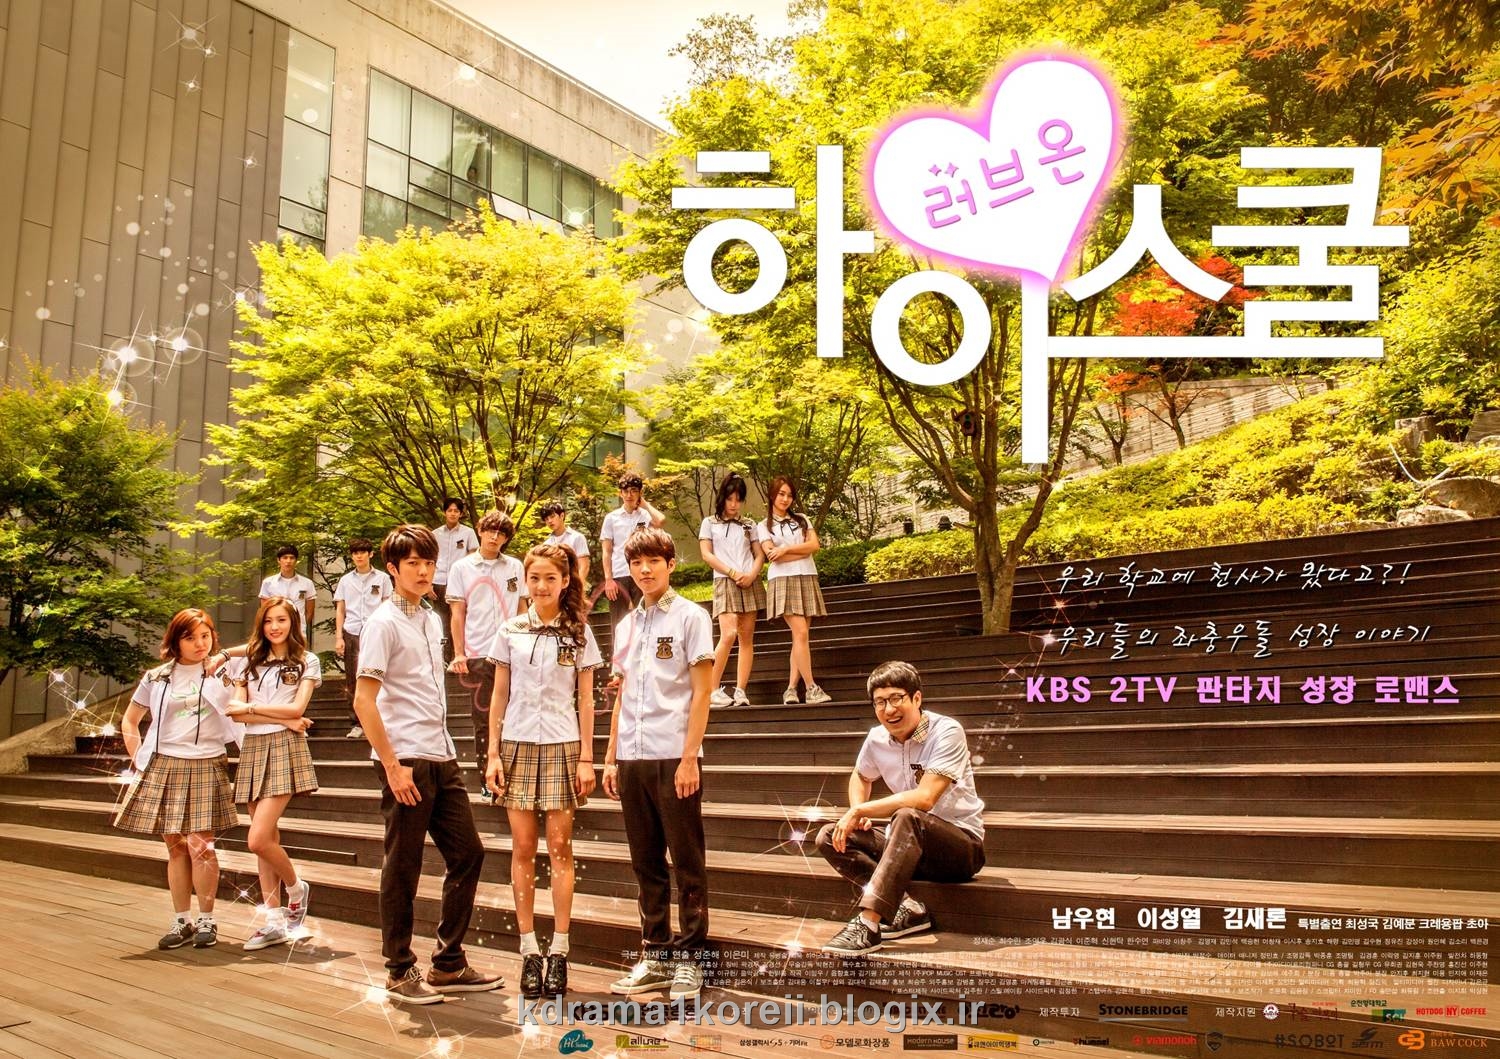 سریال کره ای عشق در دبیرستان